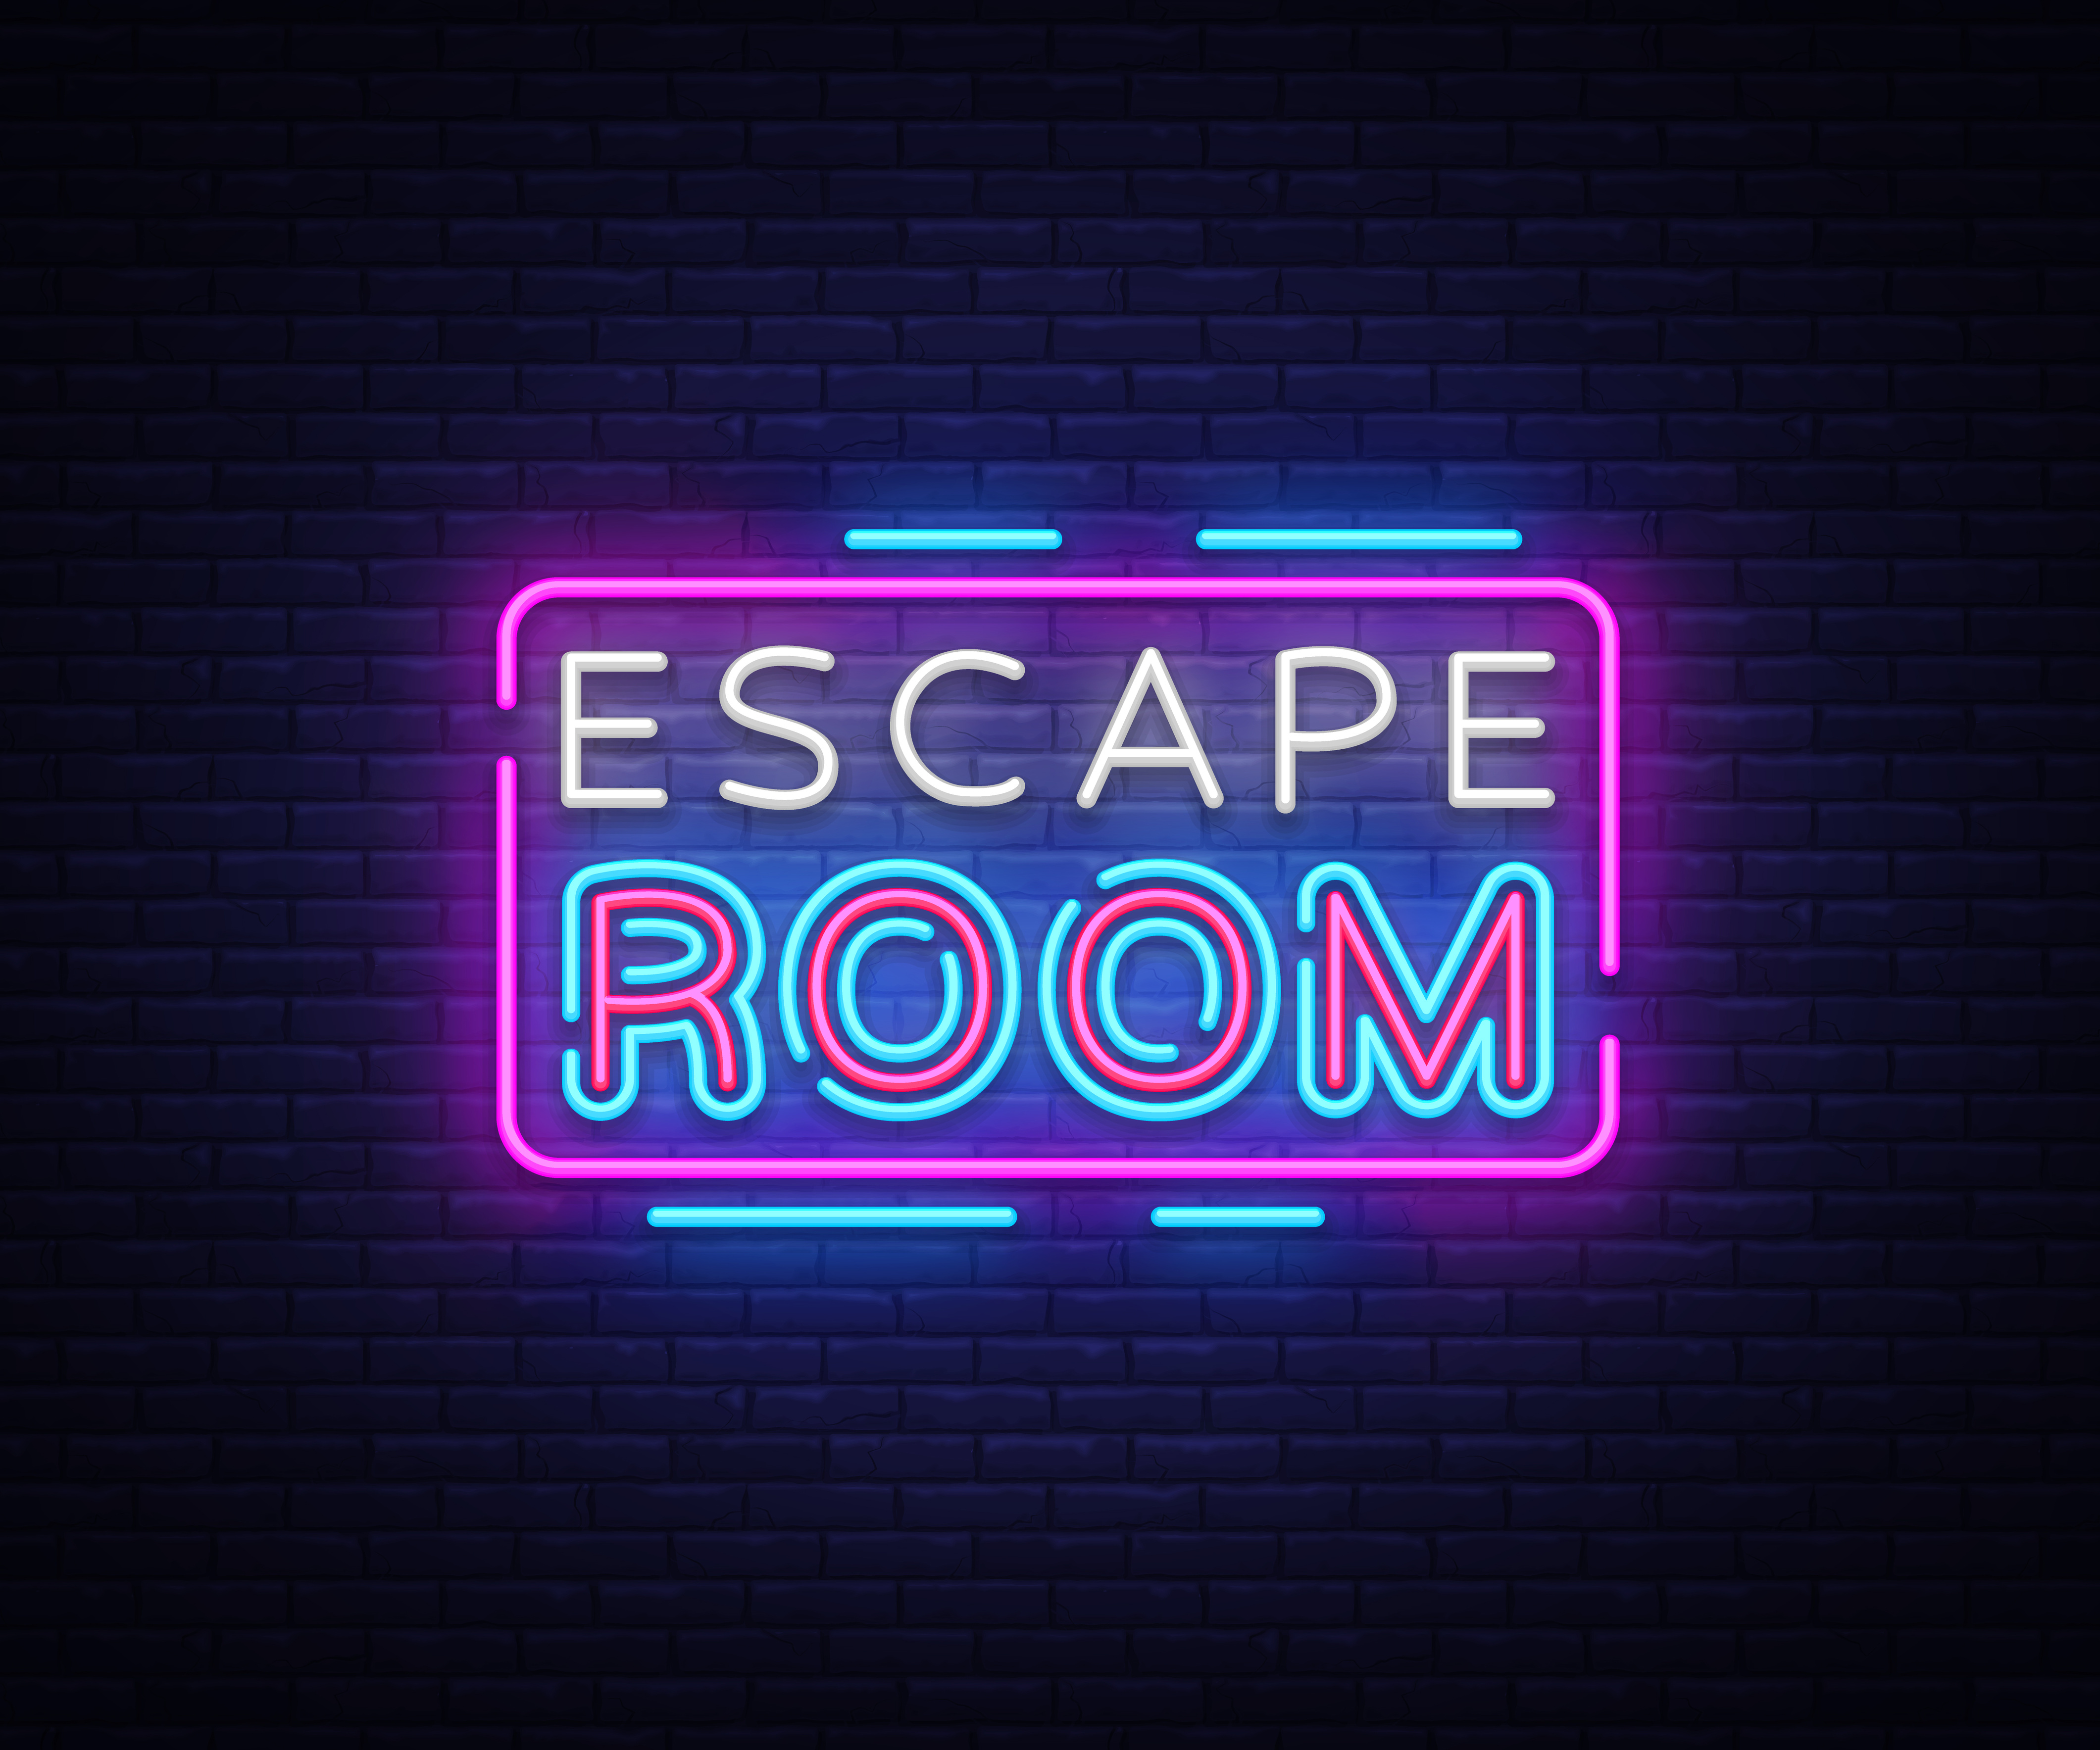 Escape Room sign